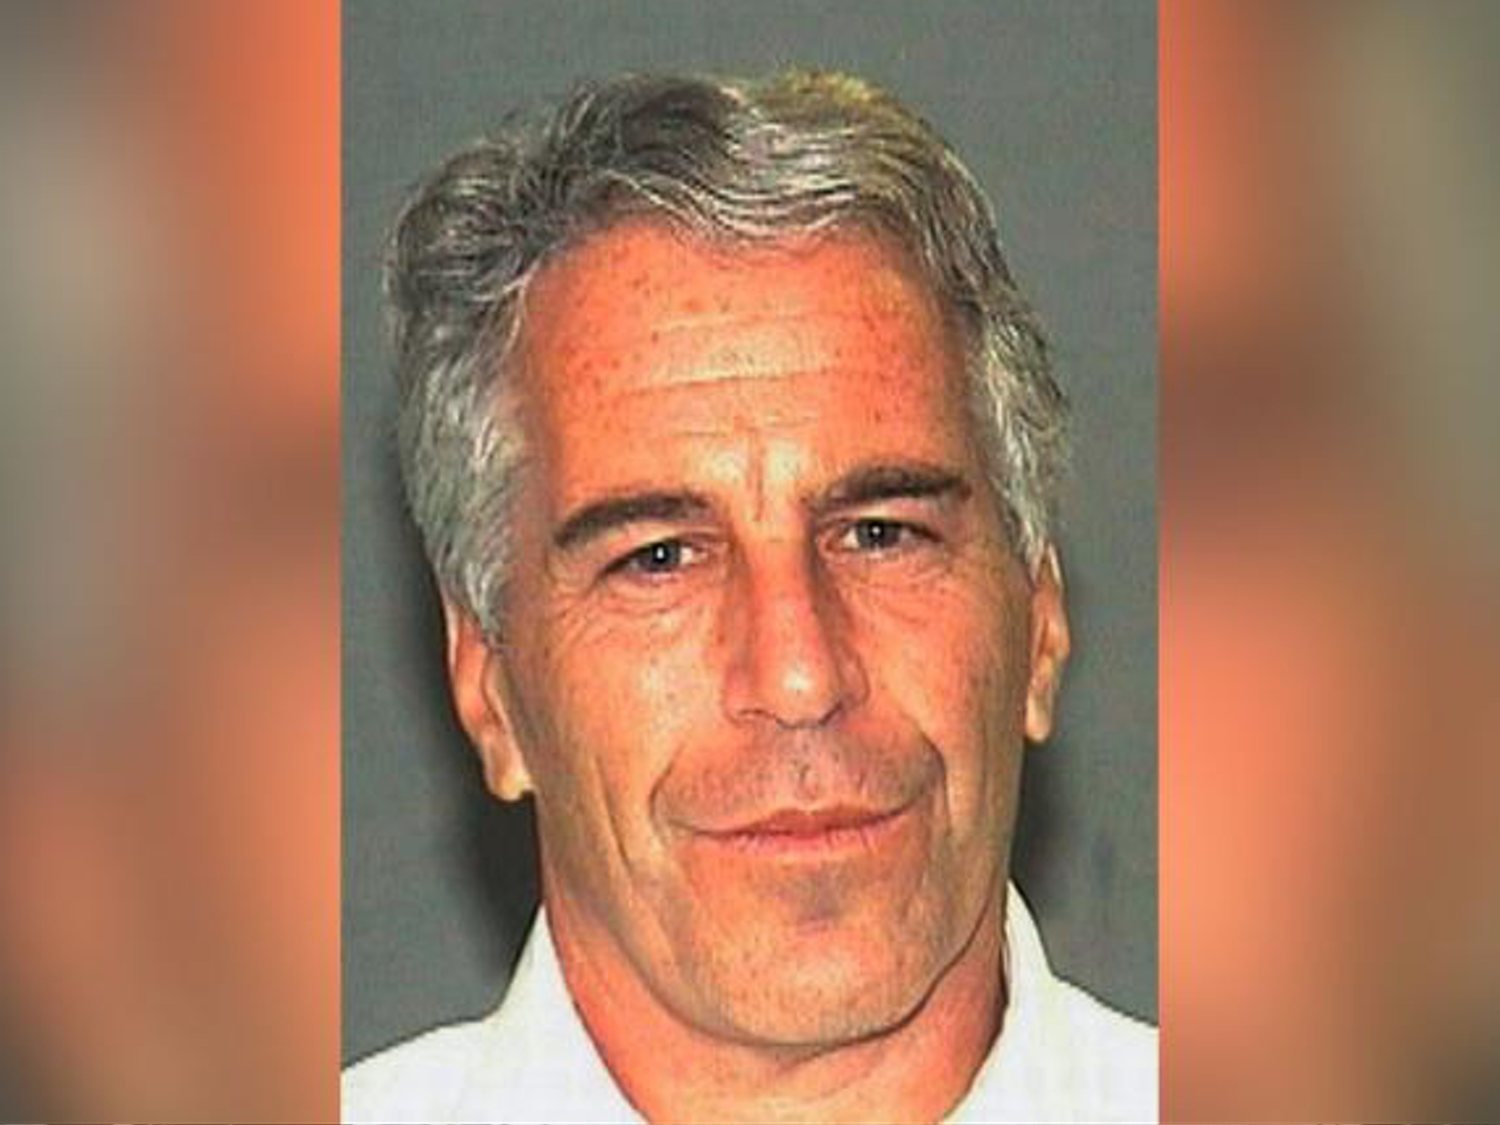 Jeffrey Epstein, el magnate acusado de tráfico de menores, se suicida en prisión